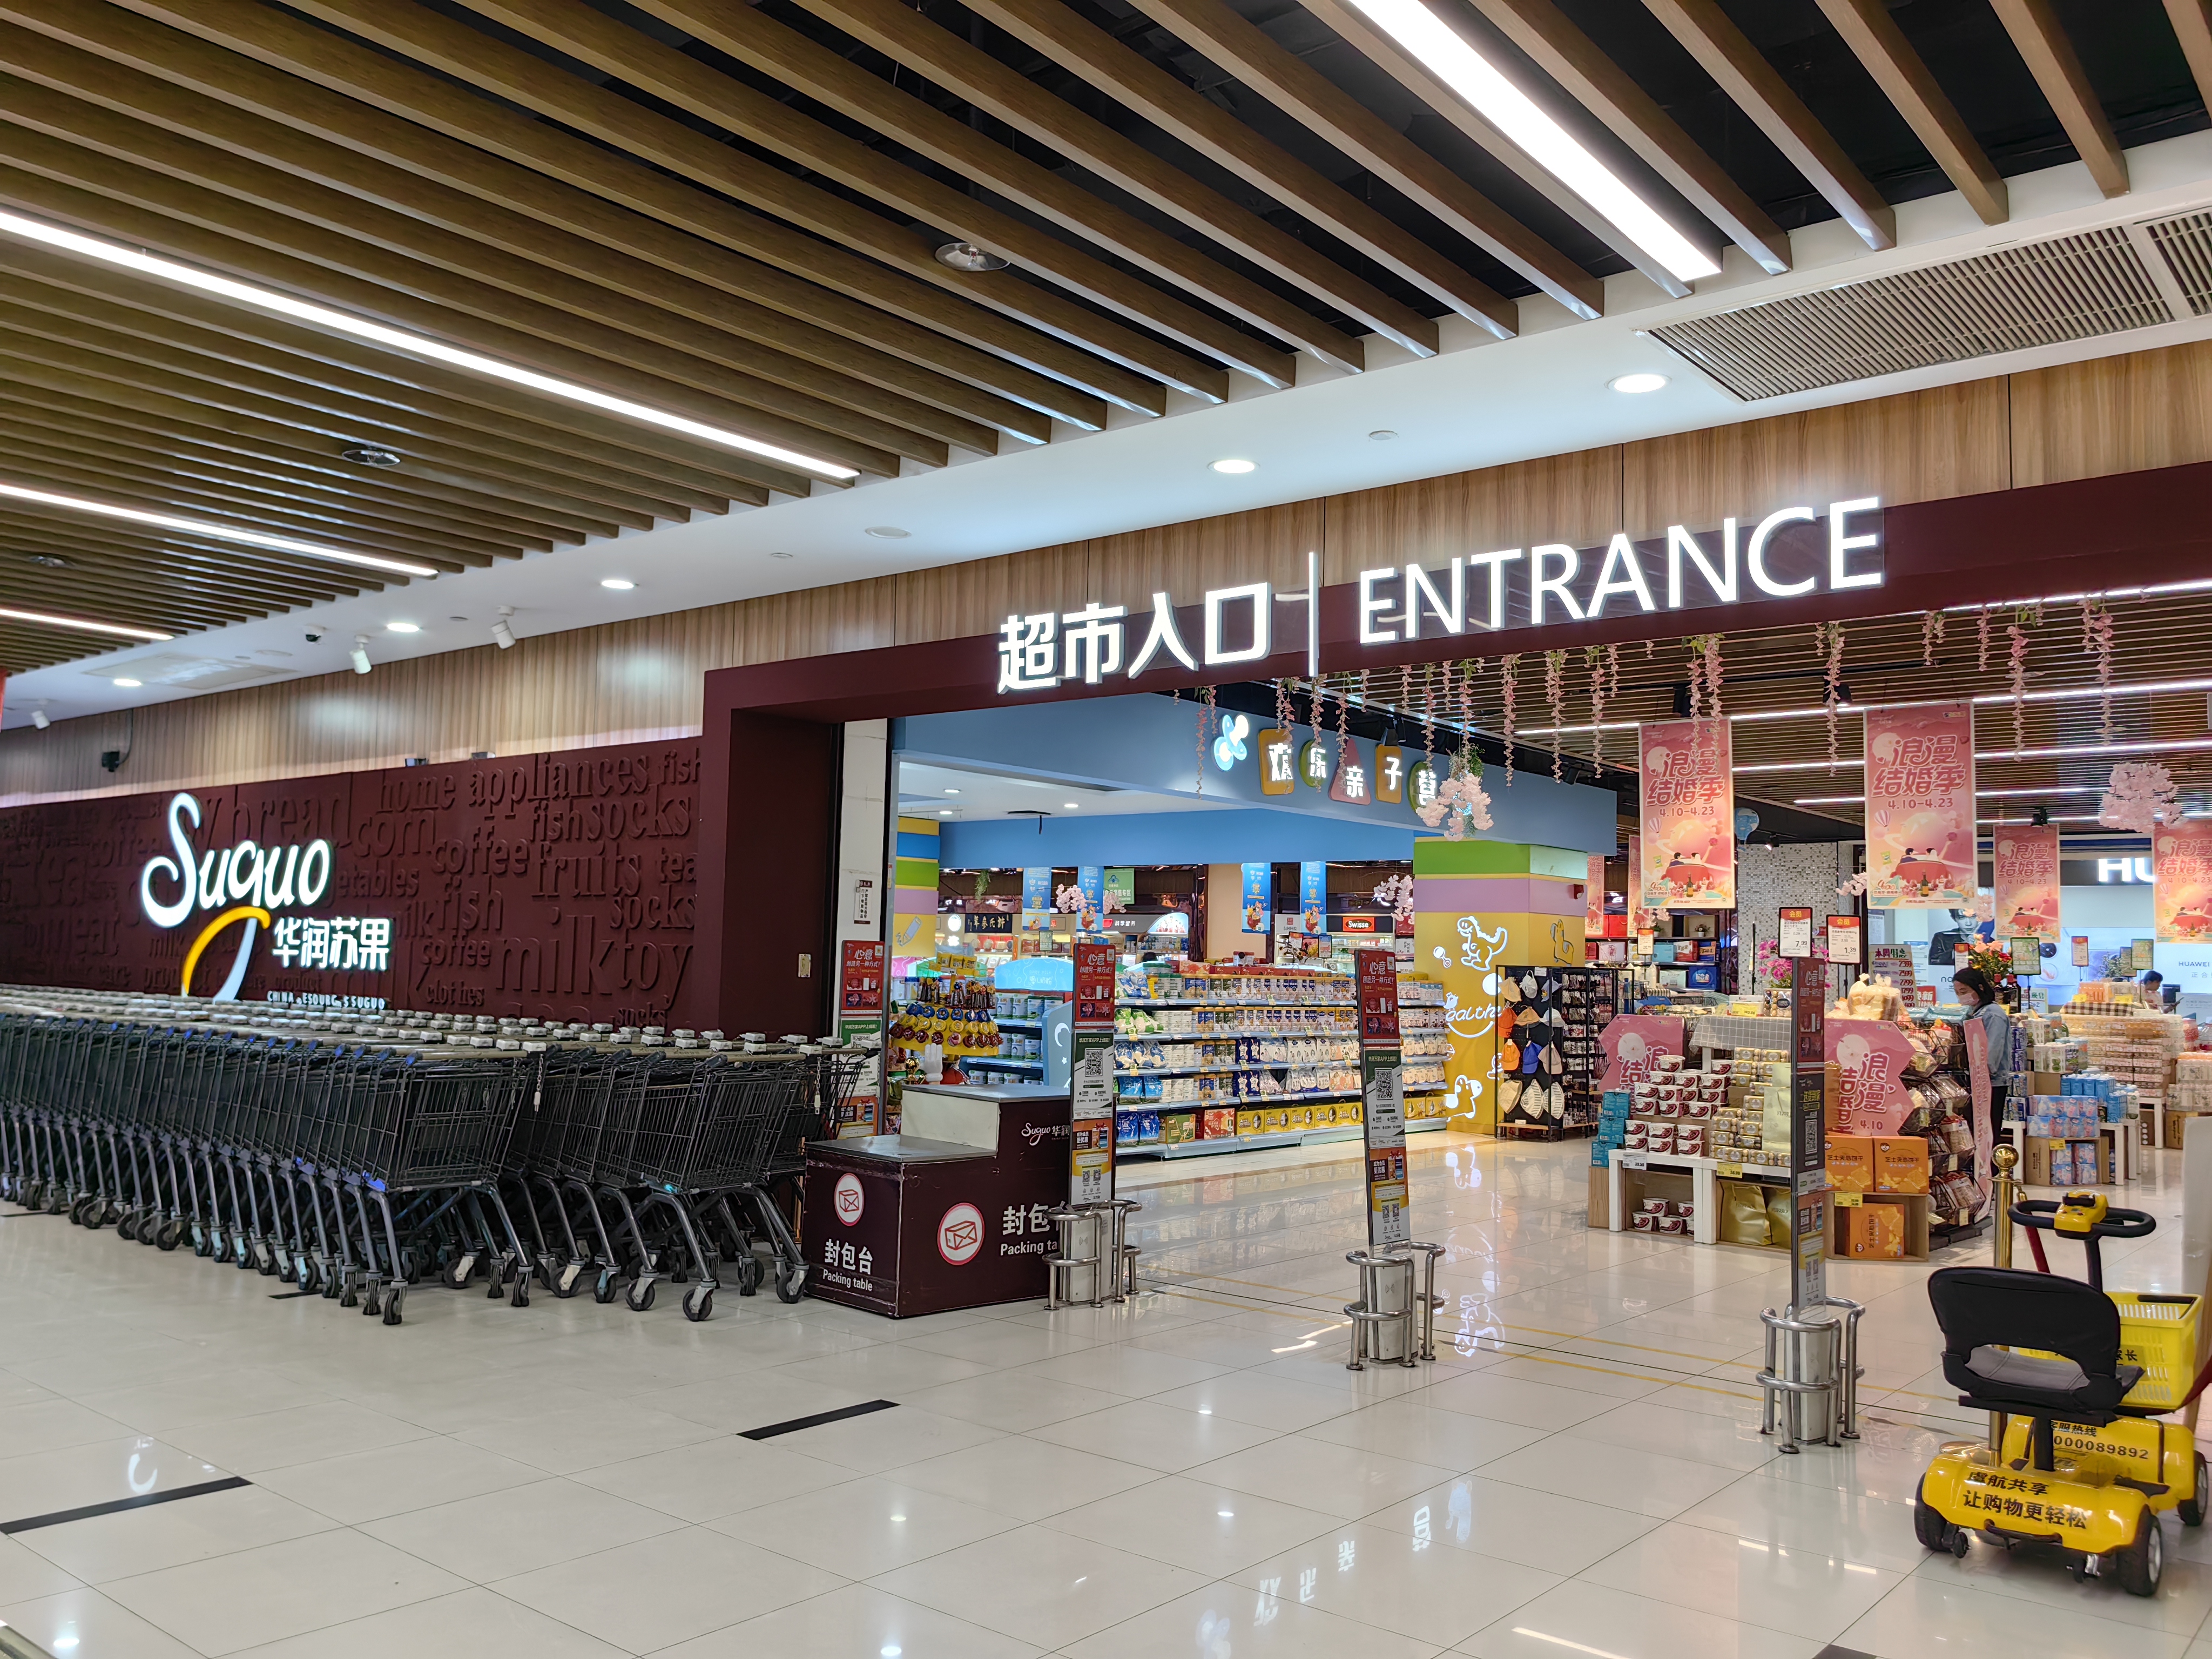 据悉,苏果超市作为华润万家旗下品牌成立于1996年,秉承引领消费升级